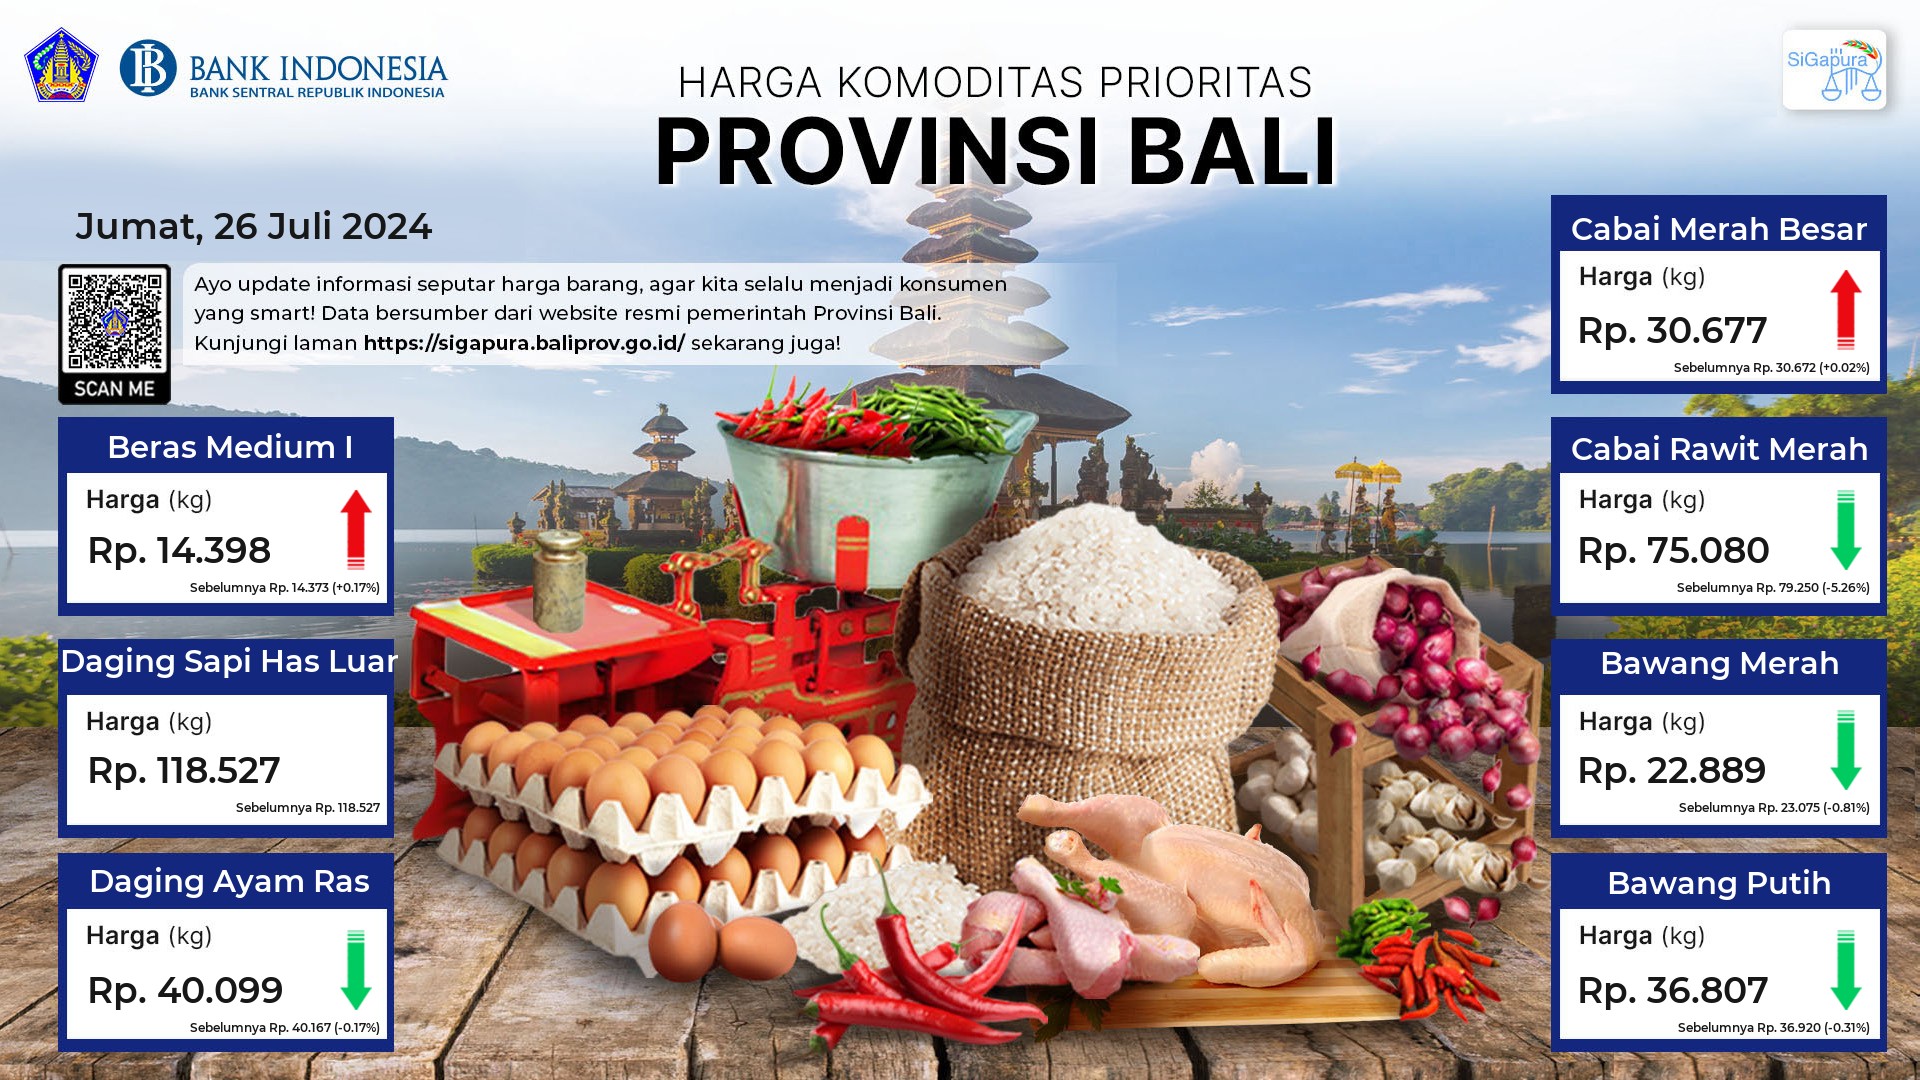 Pantauan Harga untuk 7 Komoditas Prioritas di Provinsi Bali Tanggal 26 Juli 2024